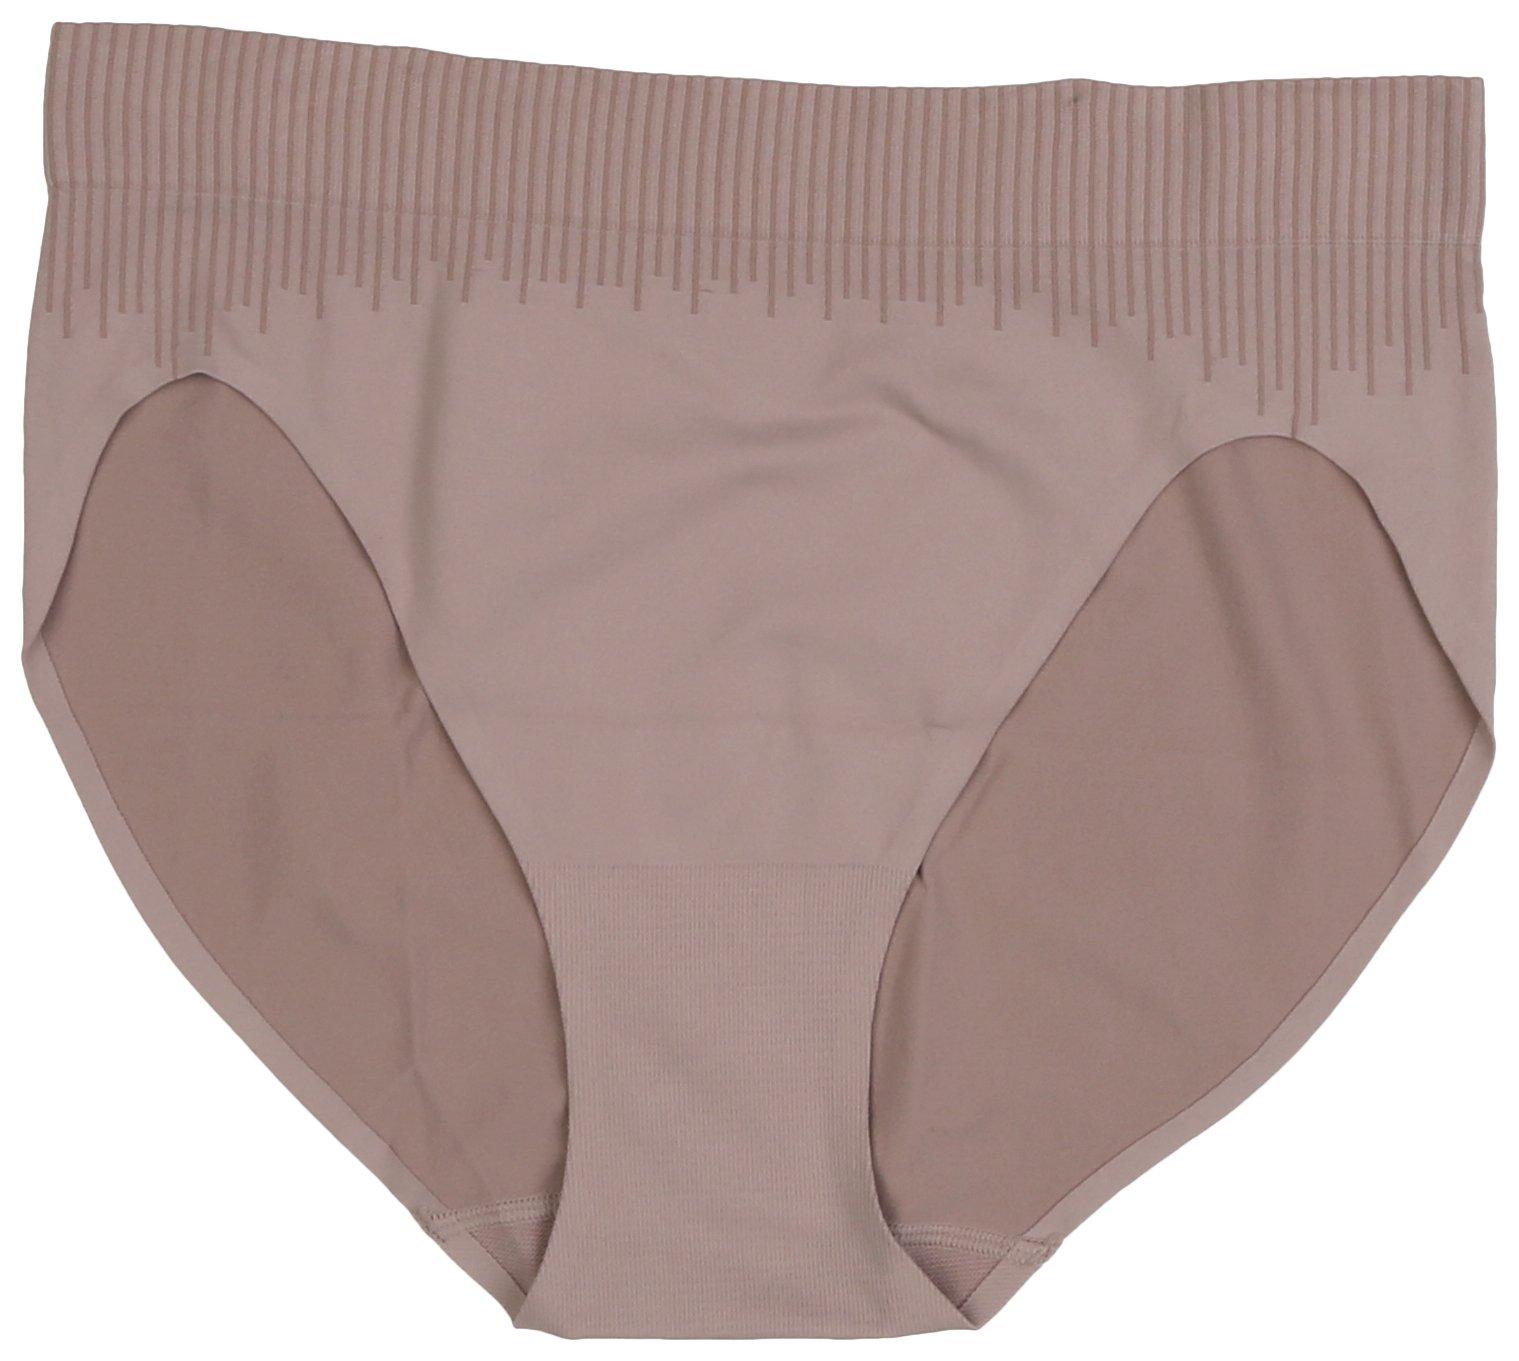 BALI High-cut Panties – 3 pack – B303JH3 - Basics by Mail